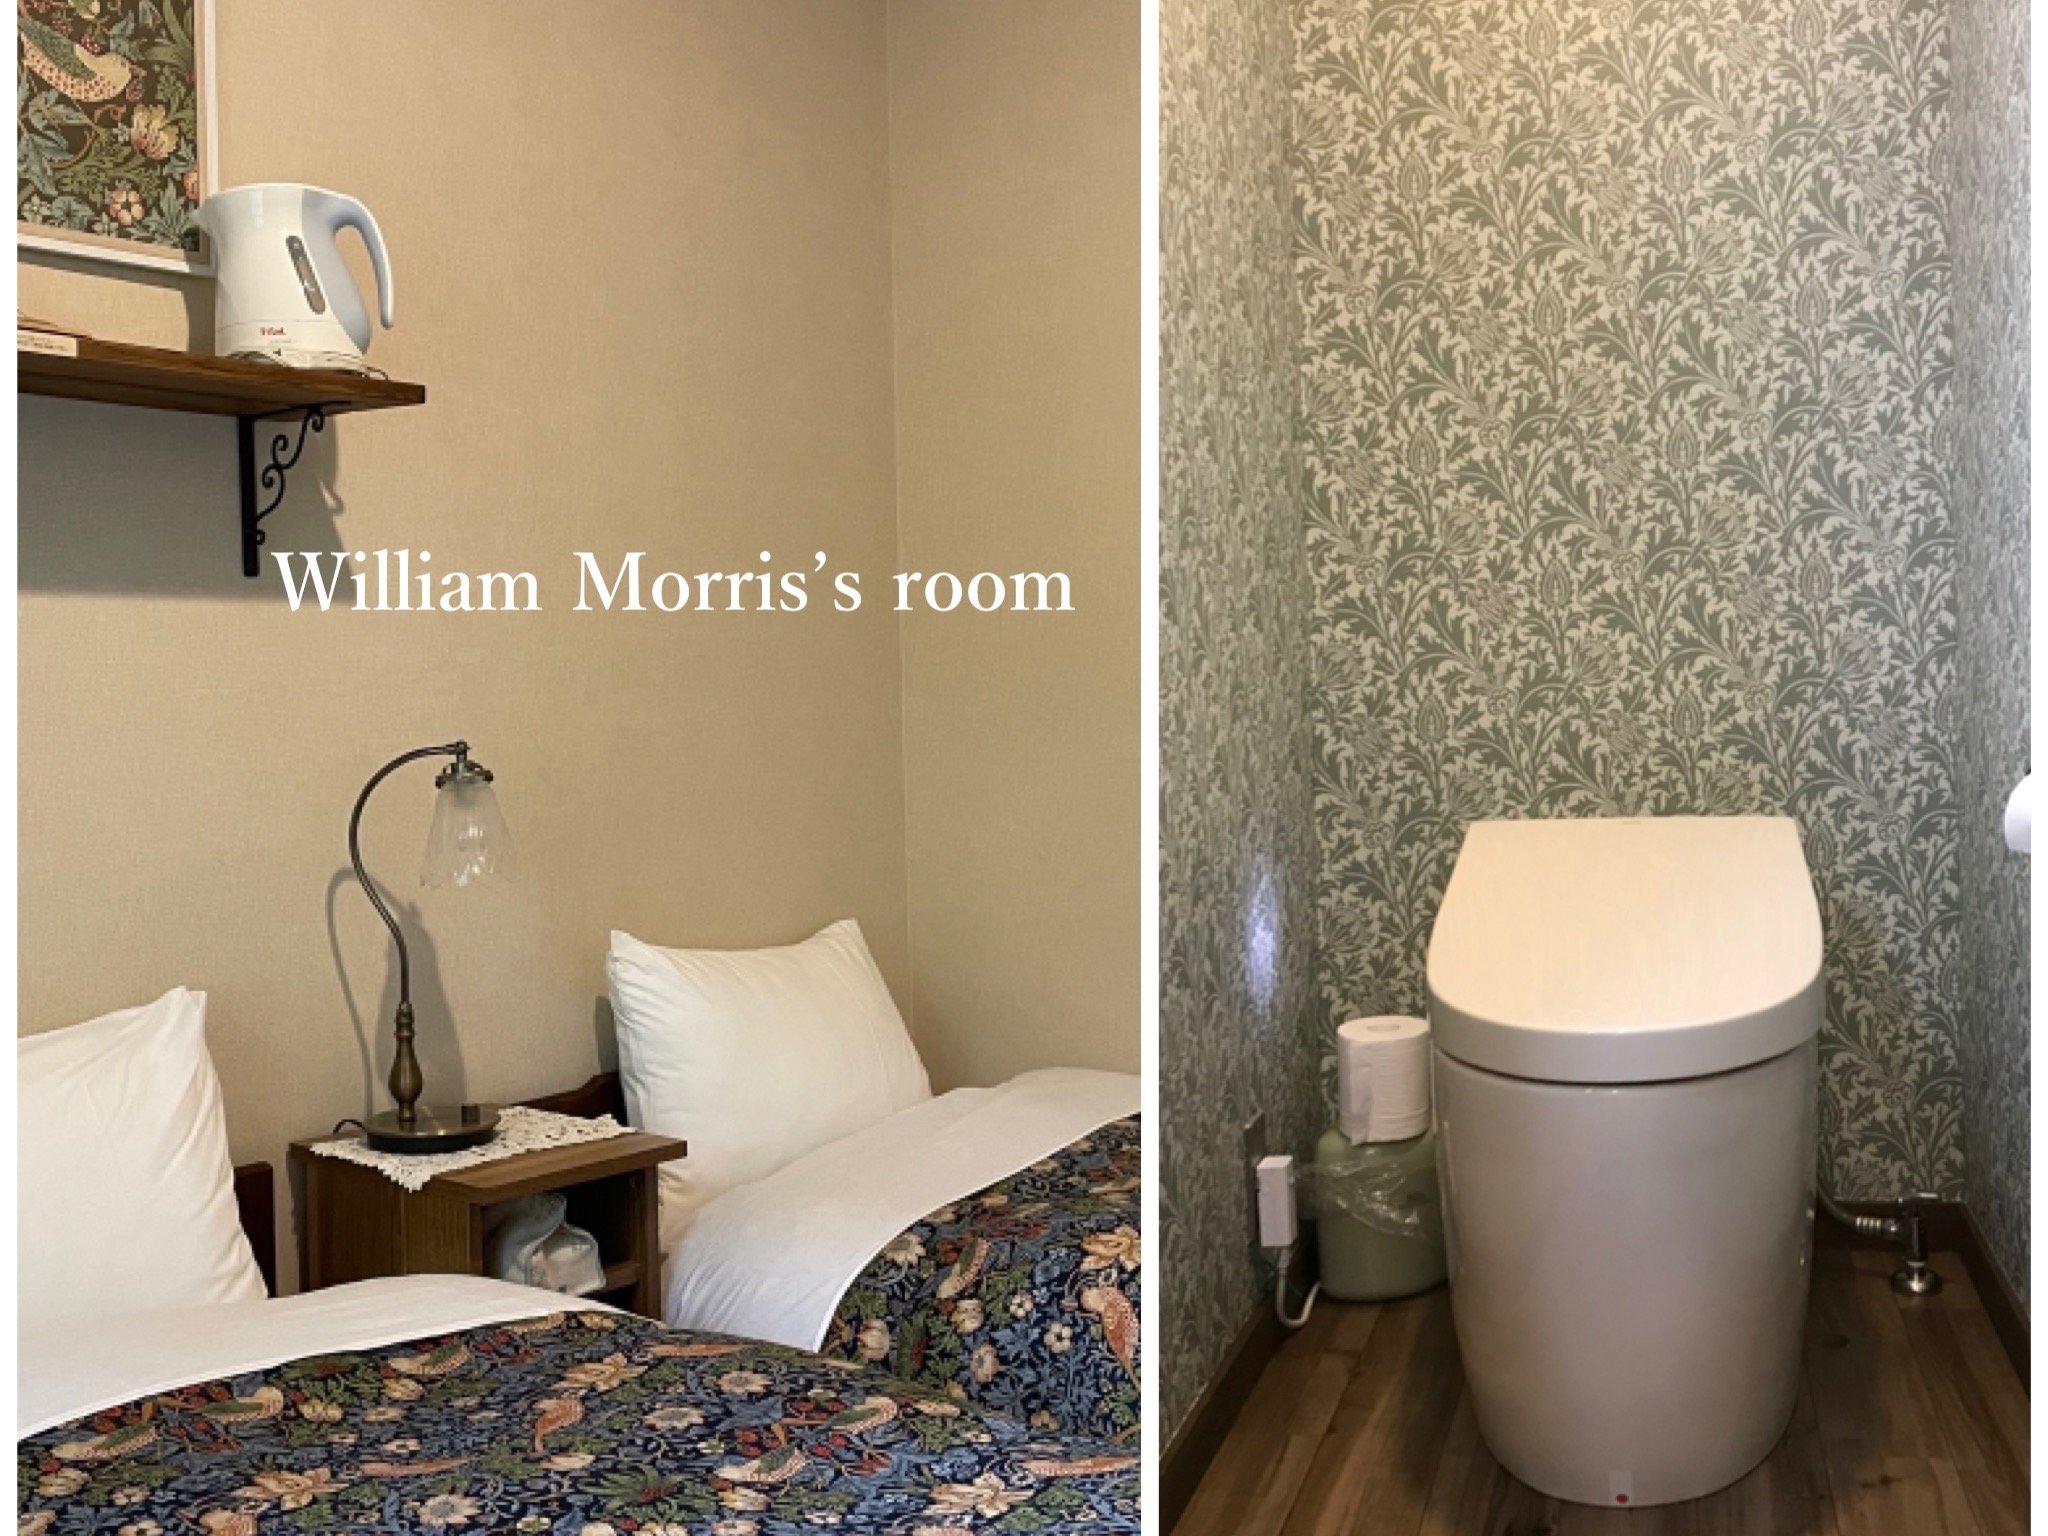 William Morris's Room